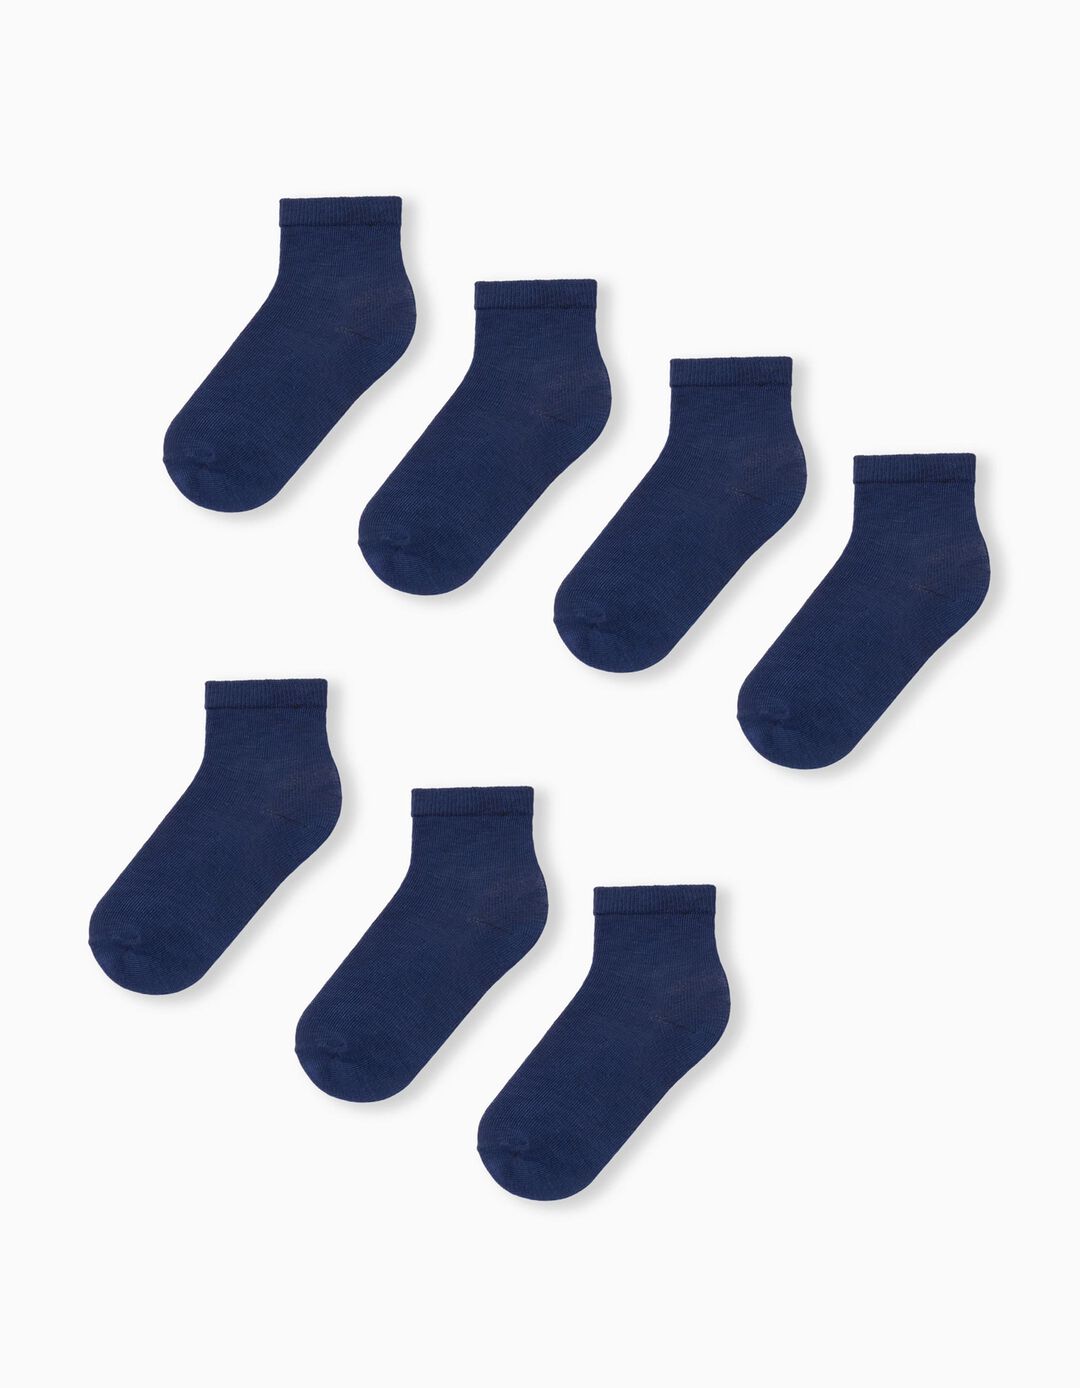 7 Basic Pairs of Socks Pack, Boys, Dark Blue